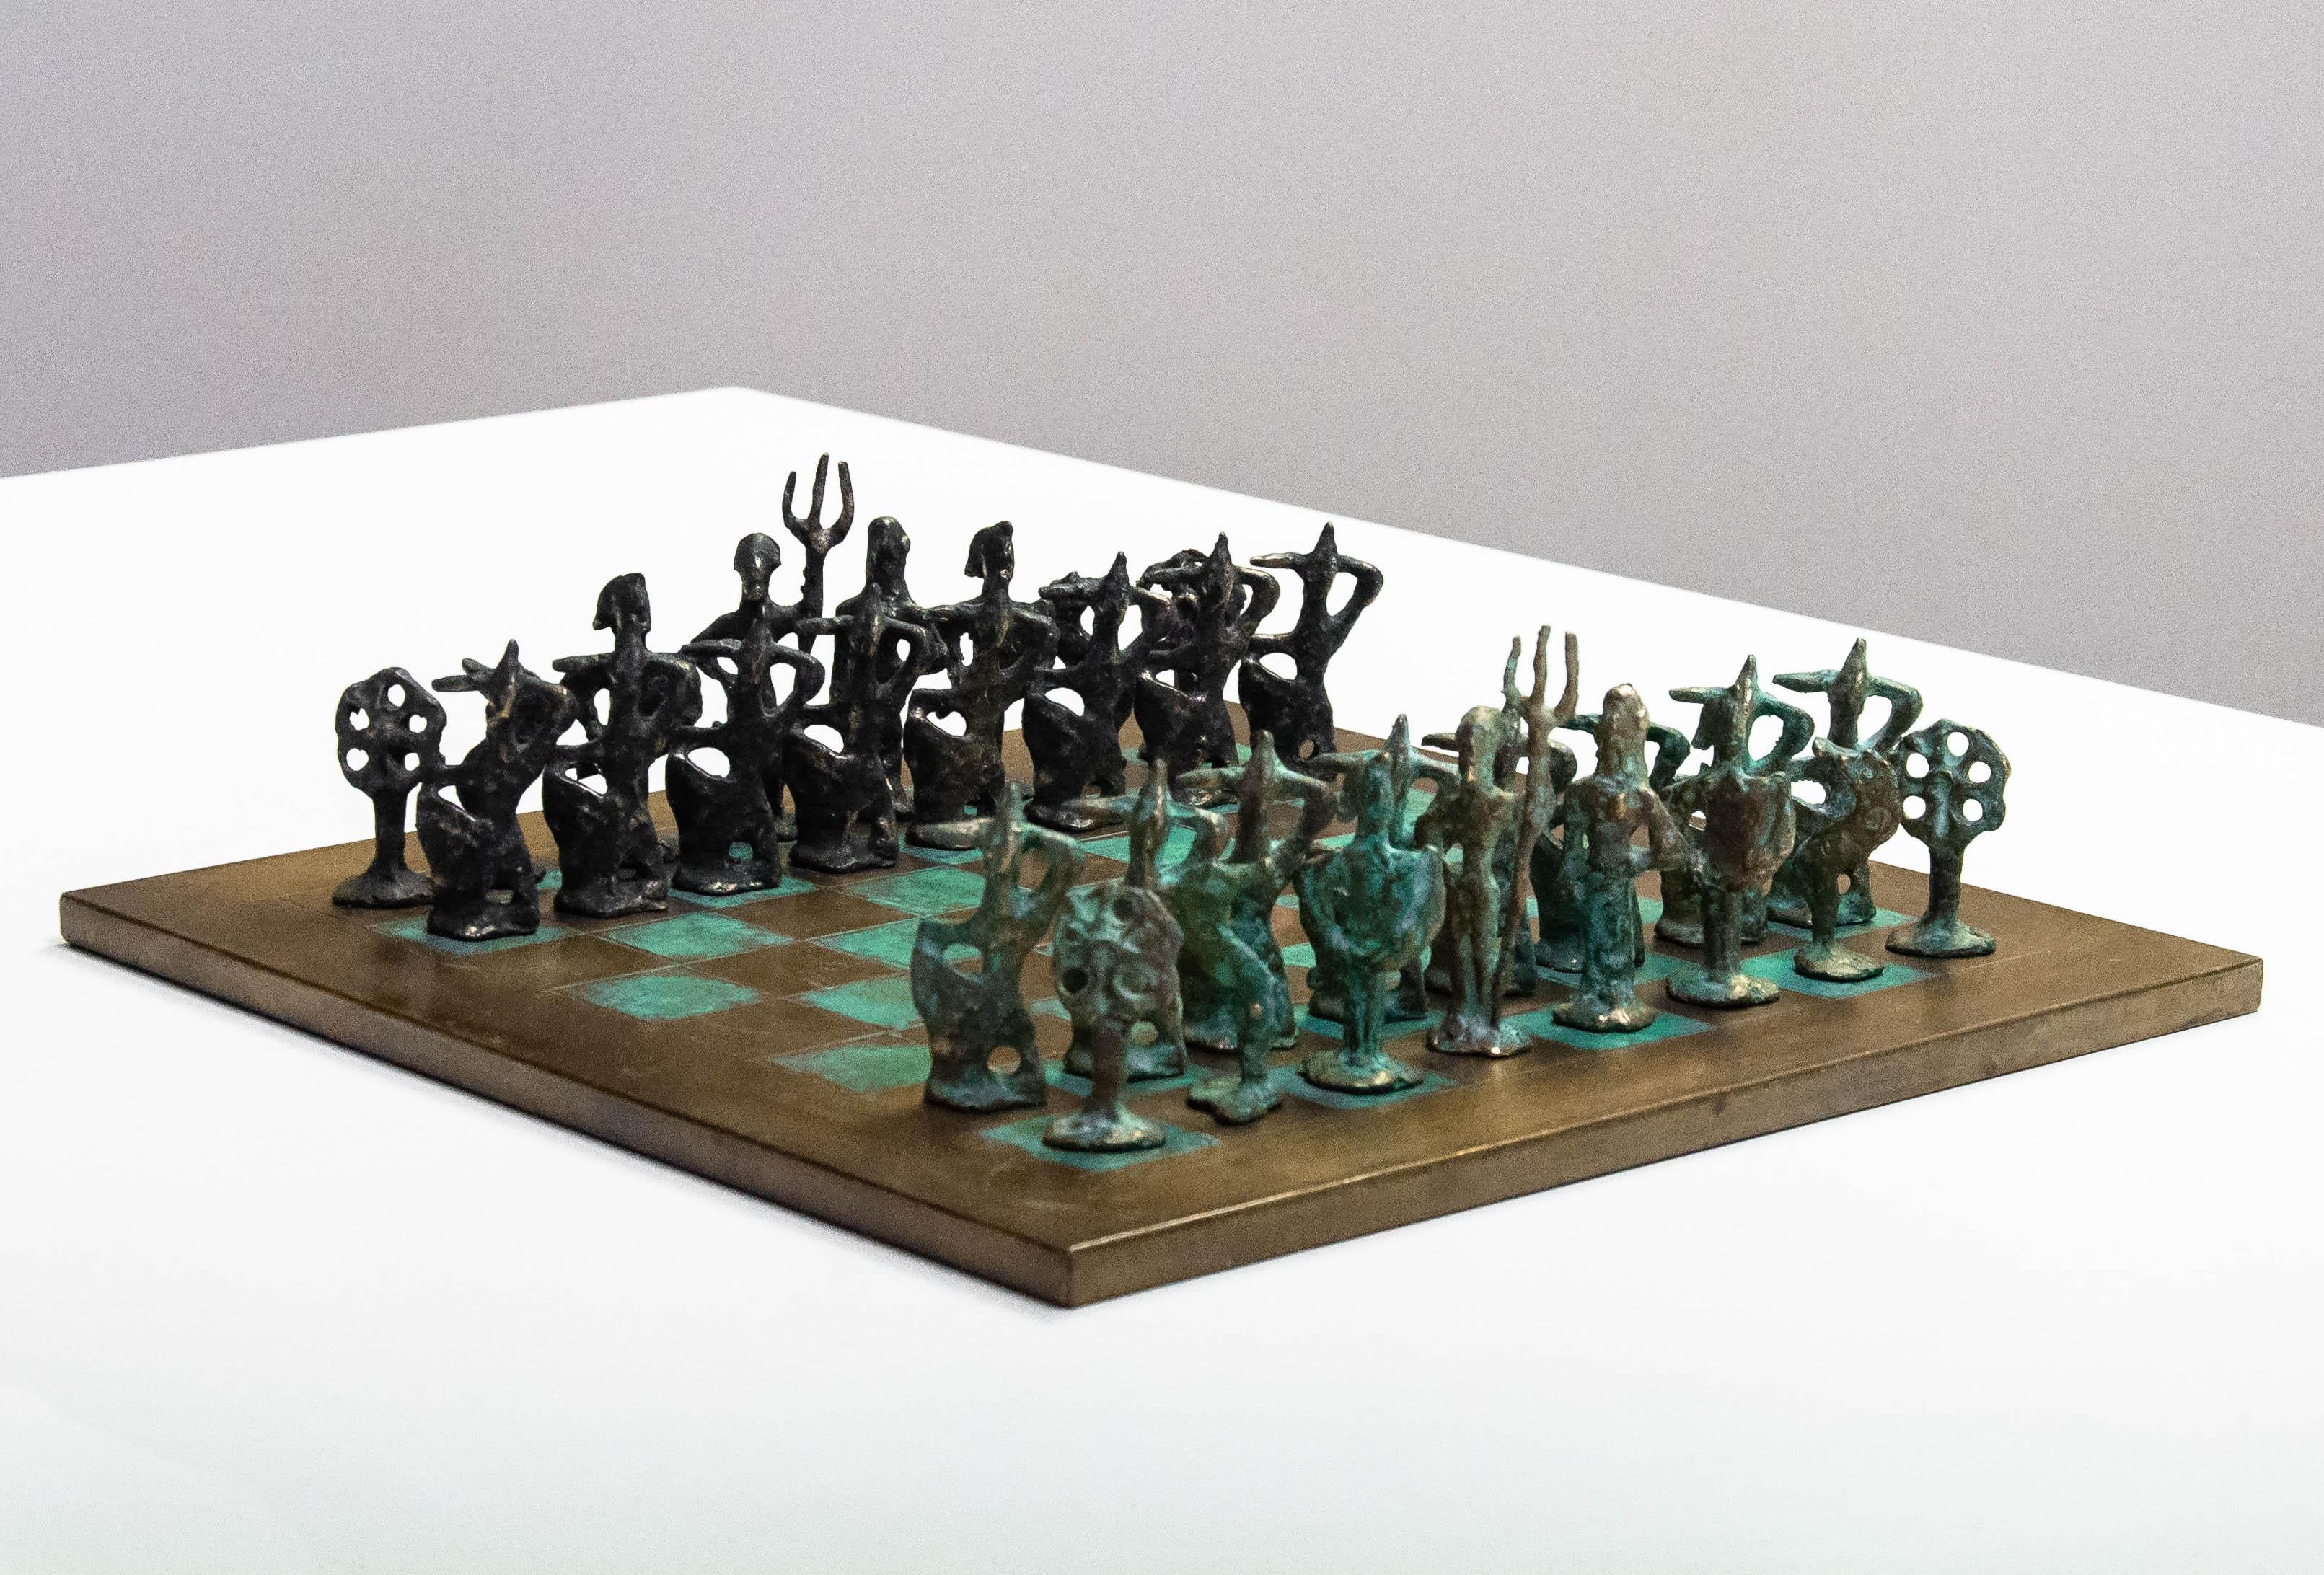 Merveilleux jeu d'échecs en bronze Brutaliste / Moderniste vintage des années 1960, fait à la main par un artisan, dans le style de l'Italien Alberto Giacometti. 
Le plateau en laiton et cuivre martelé et les pièces en laiton elles-mêmes présentent